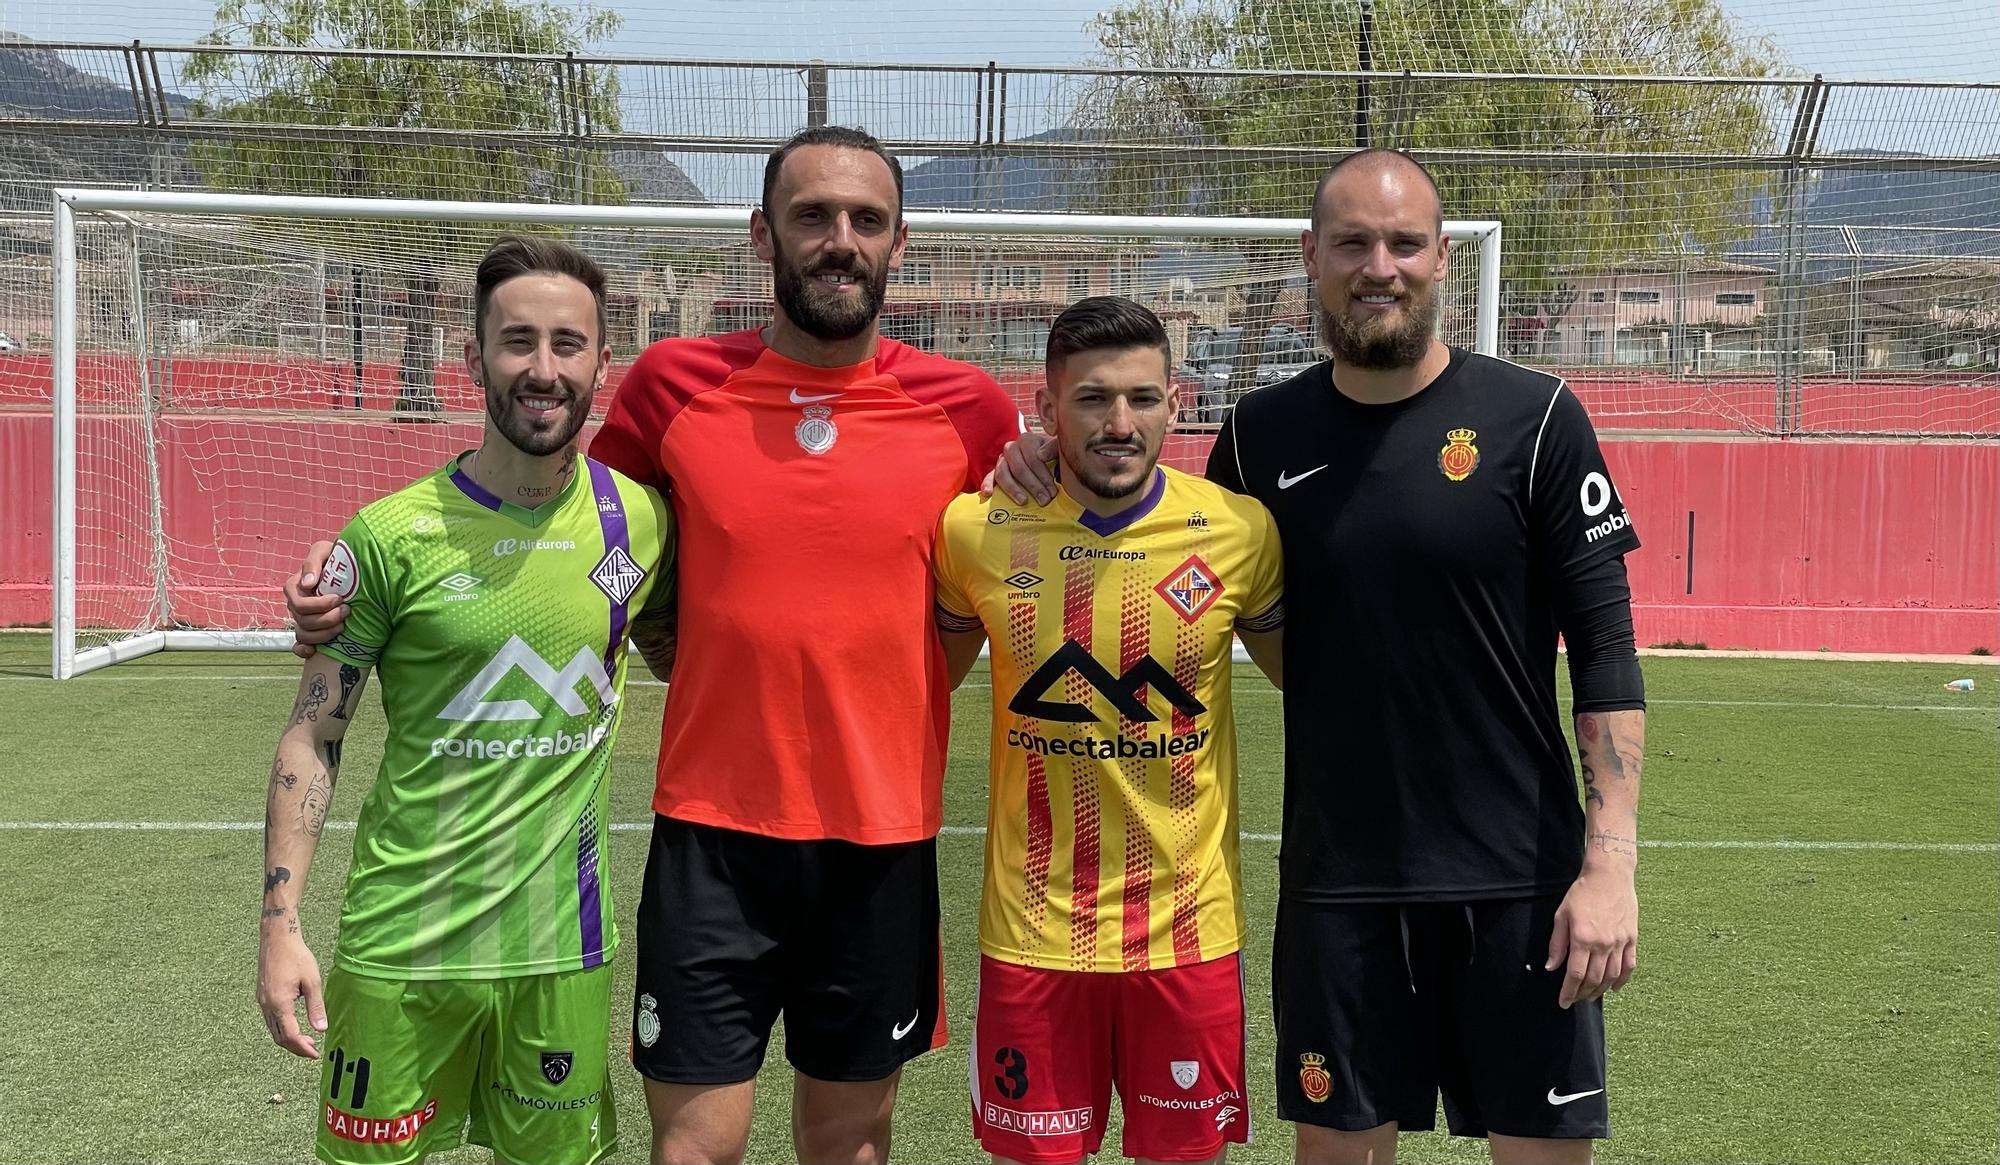 El Real Mallorca reta al Palma Futsal desde el punto de penalti, ¿quién gana?